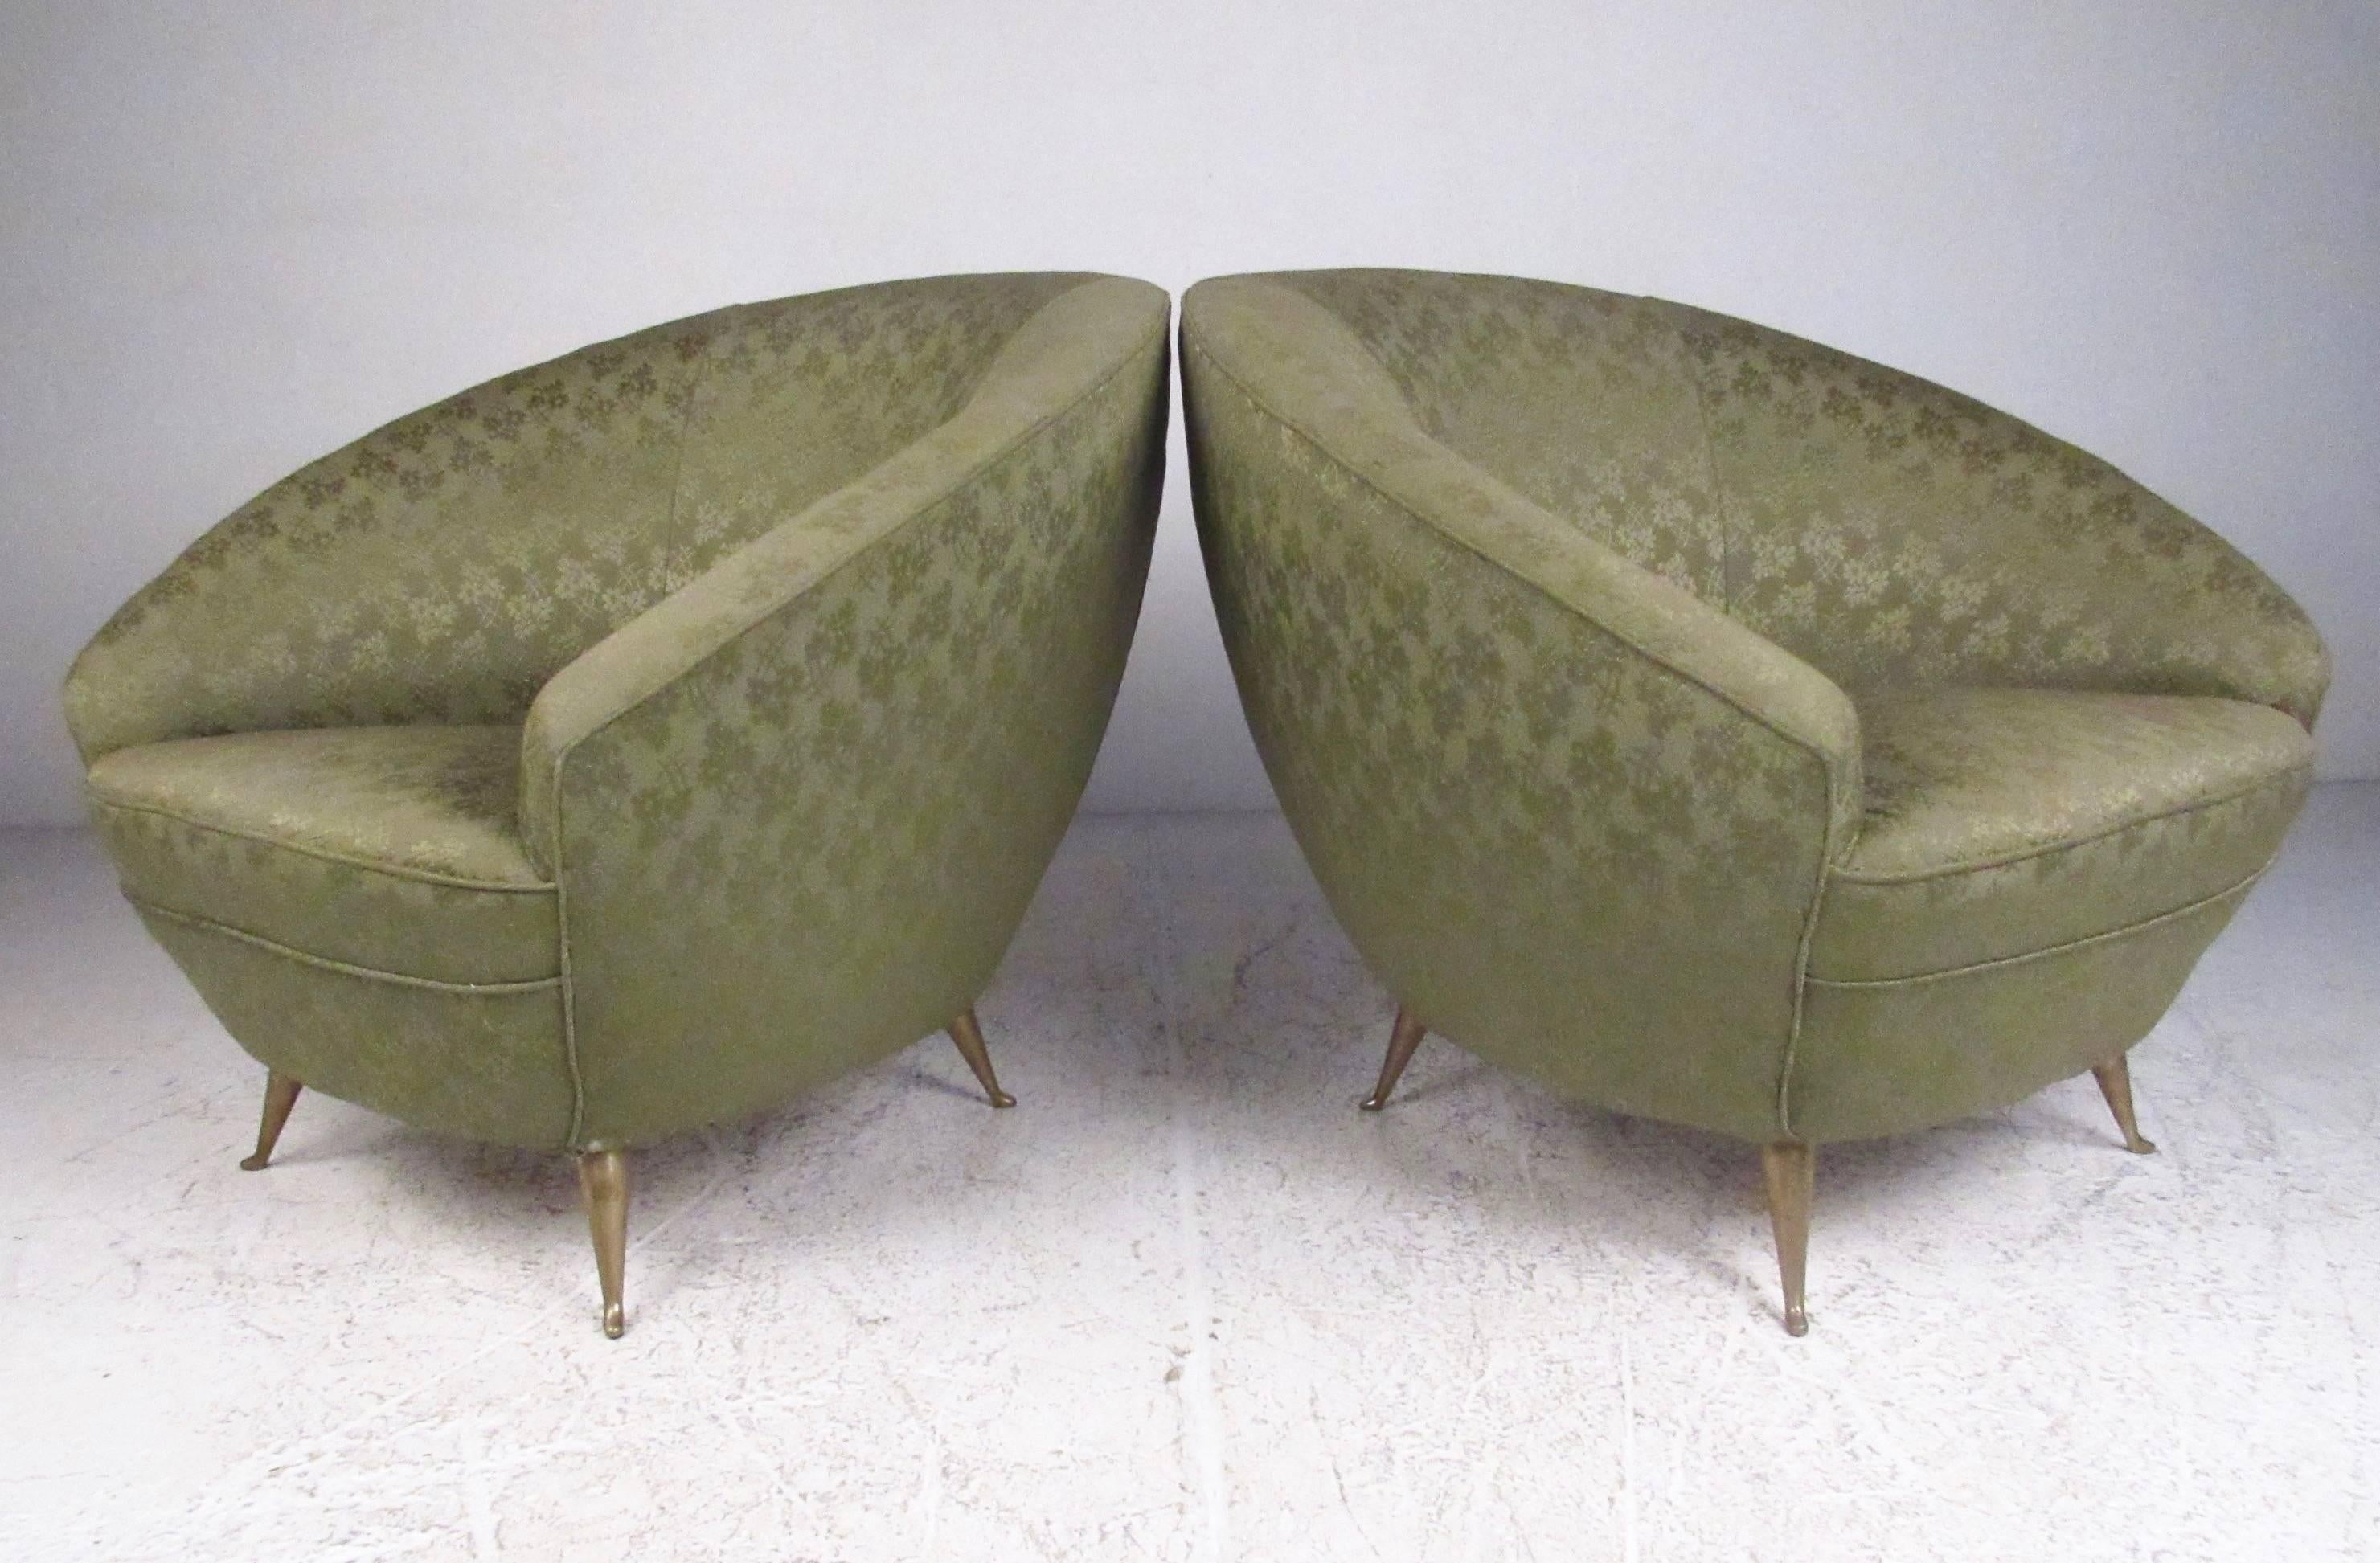 Dieses Paar moderner italienischer Loungesessel im Vintage-Stil zeichnet sich durch elegante geformte Sitze mit stilvoller Vintage-Polsterung aus. Die einzigartigen und bequemen Rückenlehnen gepaart mit den spitz zulaufenden Messingbeinen ergänzen